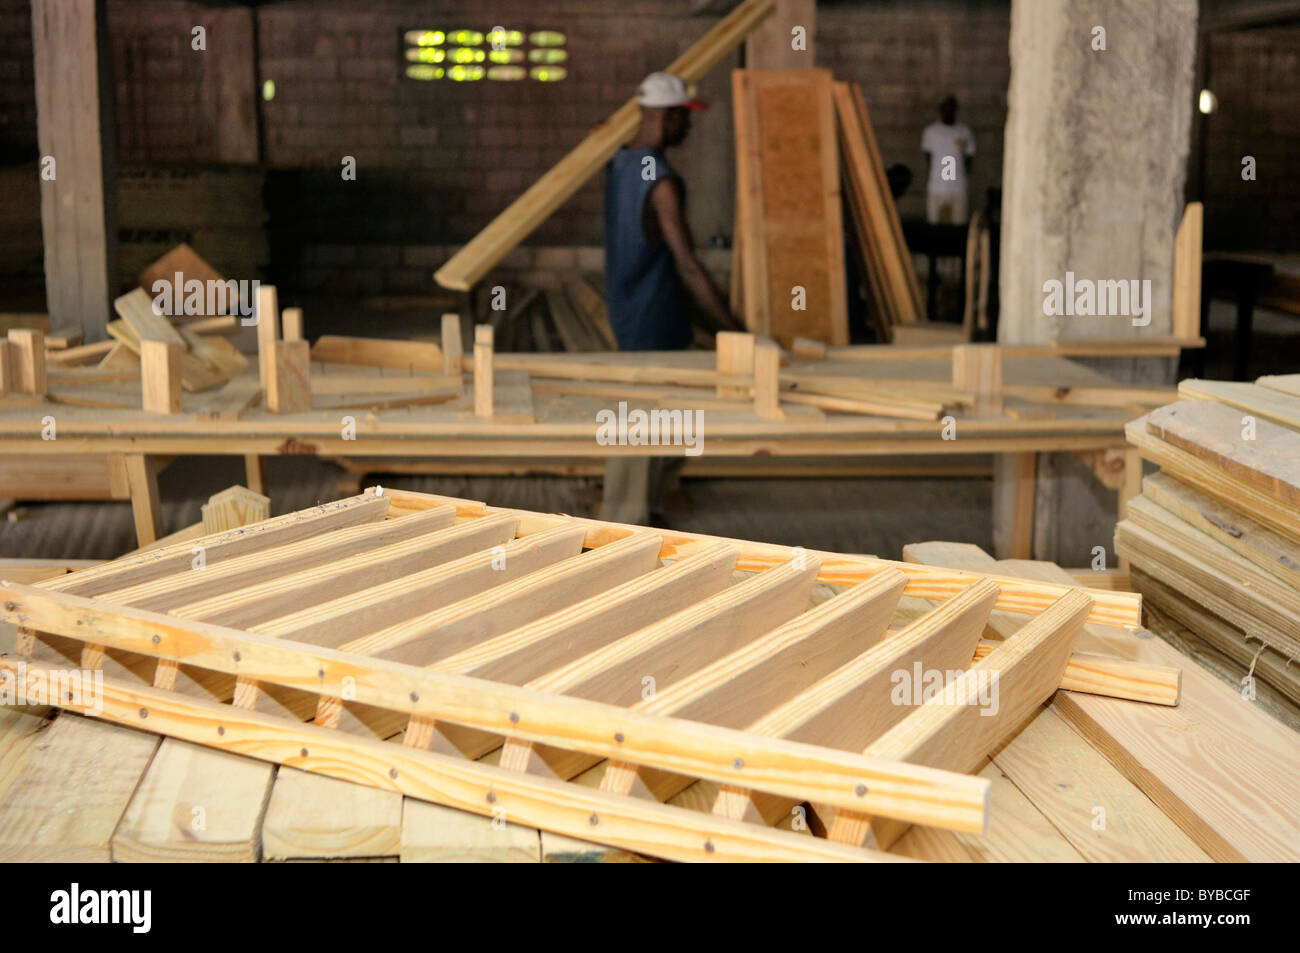 Tischlerei für die Herstellung von Komponenten für erdbebensicheres Bauen für das Andenken von Fertighäusern Stockfoto